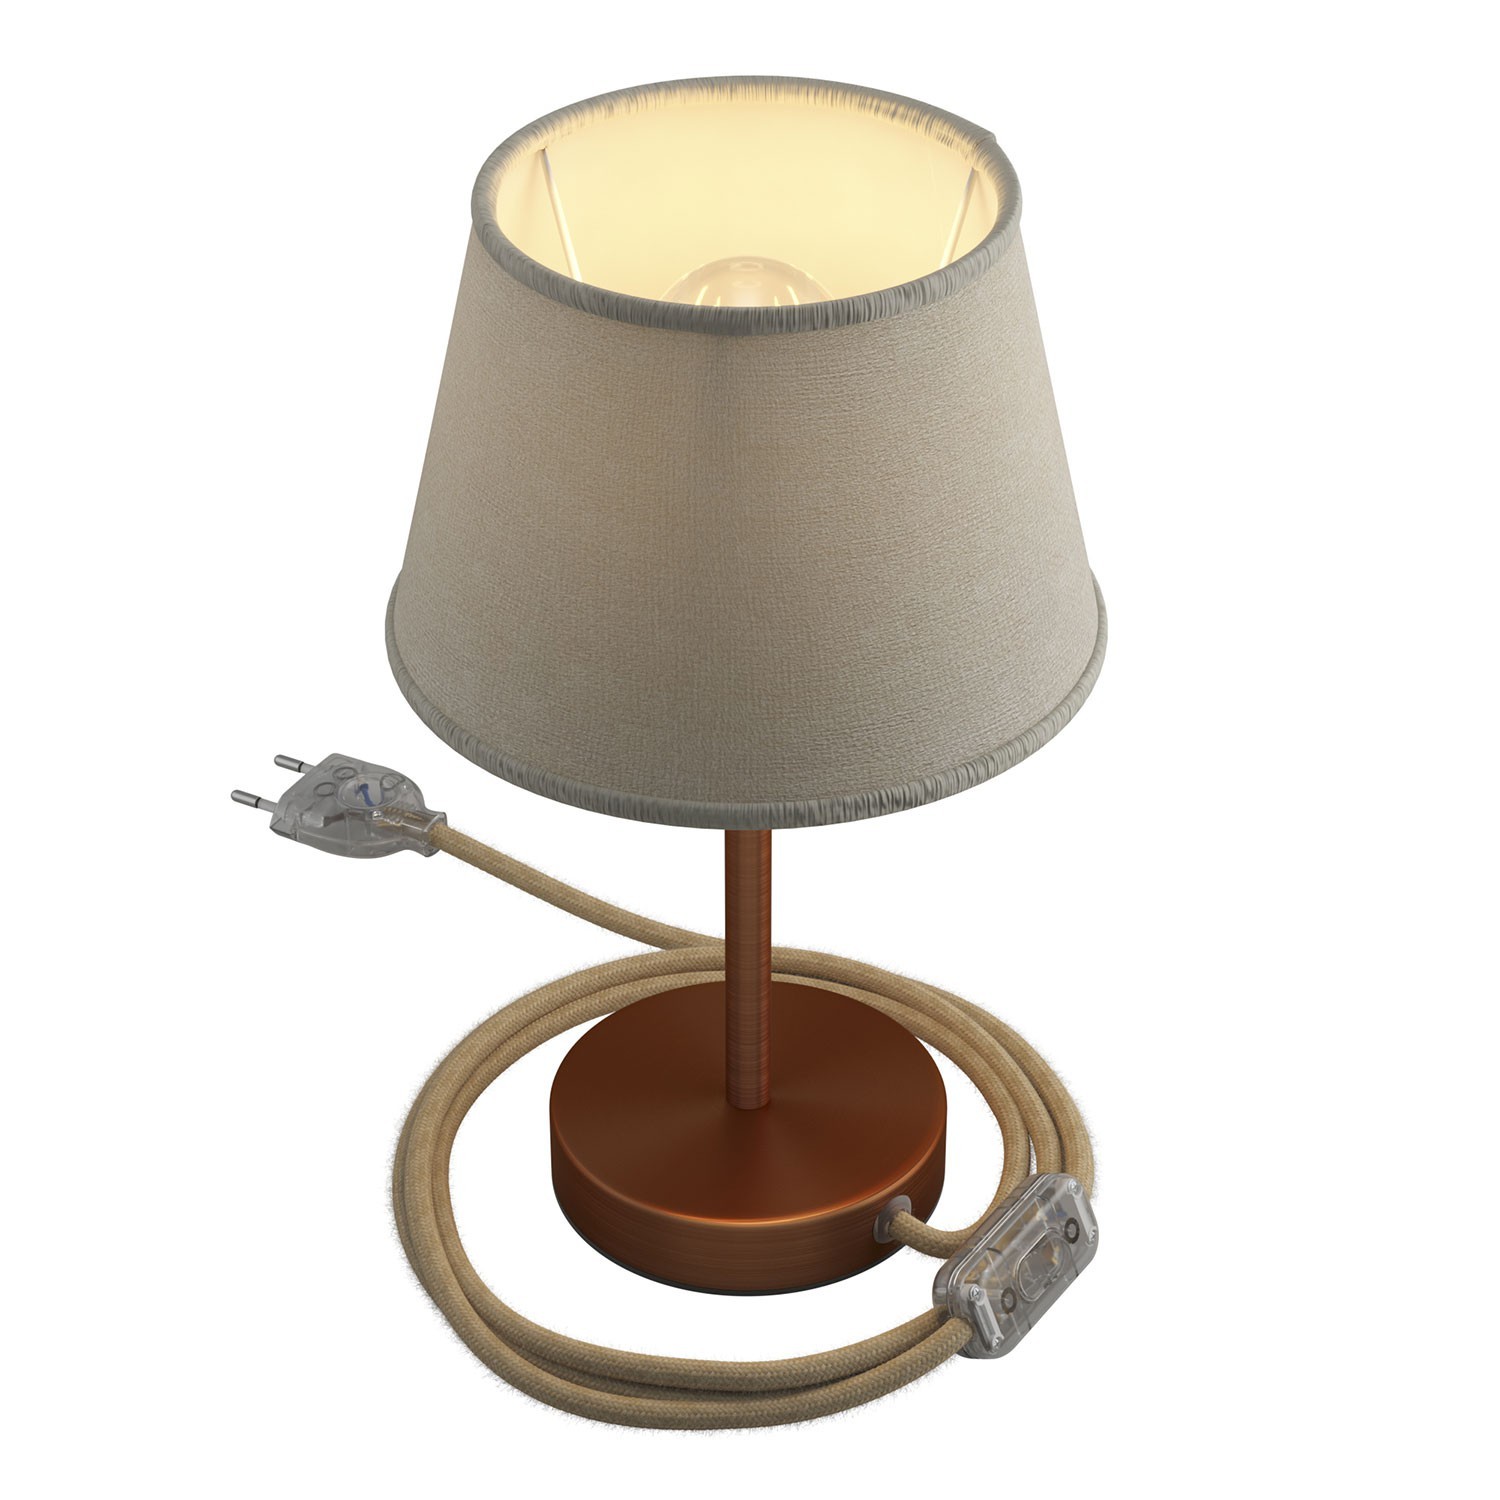 Namizno kovinsko svetilo Alzaluce s senčilom Impero, s kablom, stikalom in vtikačem